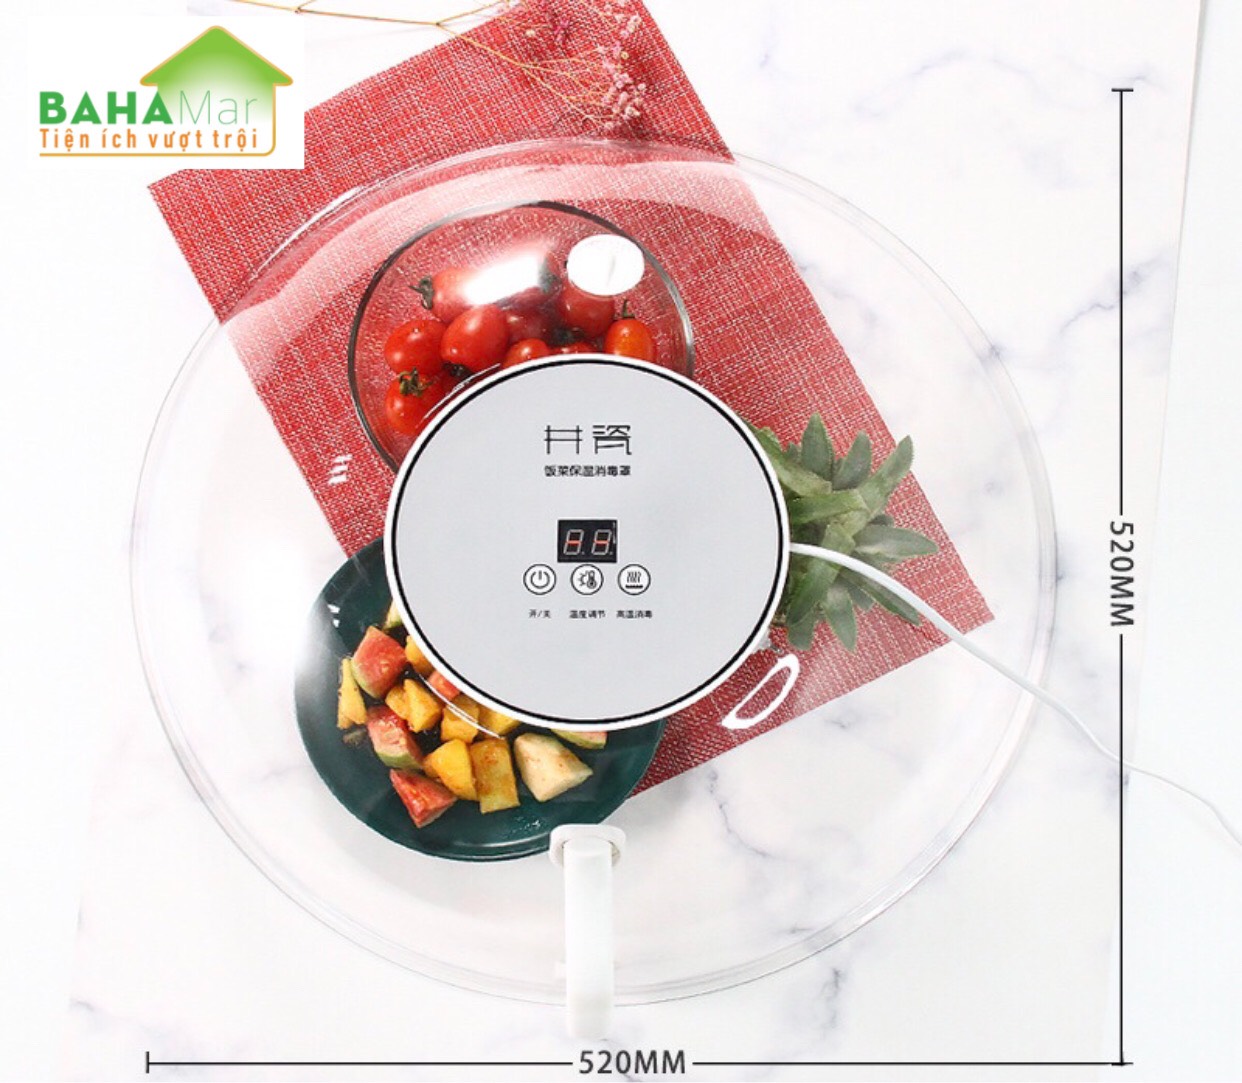 LỒNG BÀN THÔNG MINH CÁCH NHIỆT LÀM NÓNG  GIỮ ẤM THỨC ĂN  BAHAMAR  Kích thước: 180x420mm dùng giữ ấm thức ăn  rã đông thực phẩm  bảo quản nguyên hương